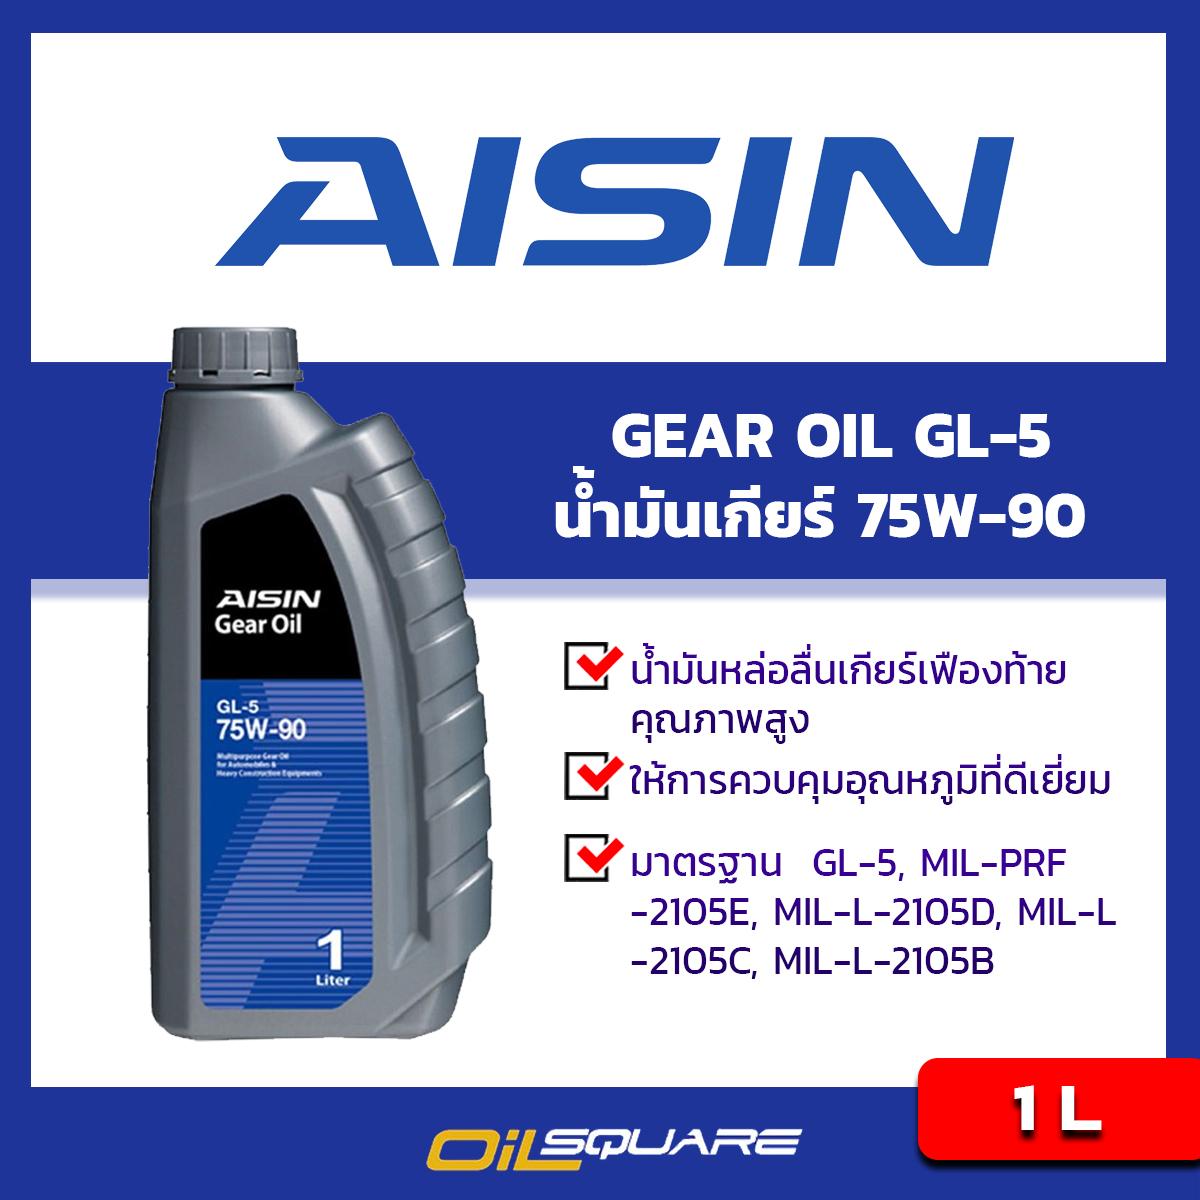 ไอชิน น้ำมันเกียร์ จีแอล5 AISIN Gear Oil SAE 75W-90 API GL-5 ขนาด 1 ลิตร l น้ำมันเกียร์และเฟืองท้าย สำหรับรถเกียร์ธรรมดา l Oilsquare ออยสแควร์